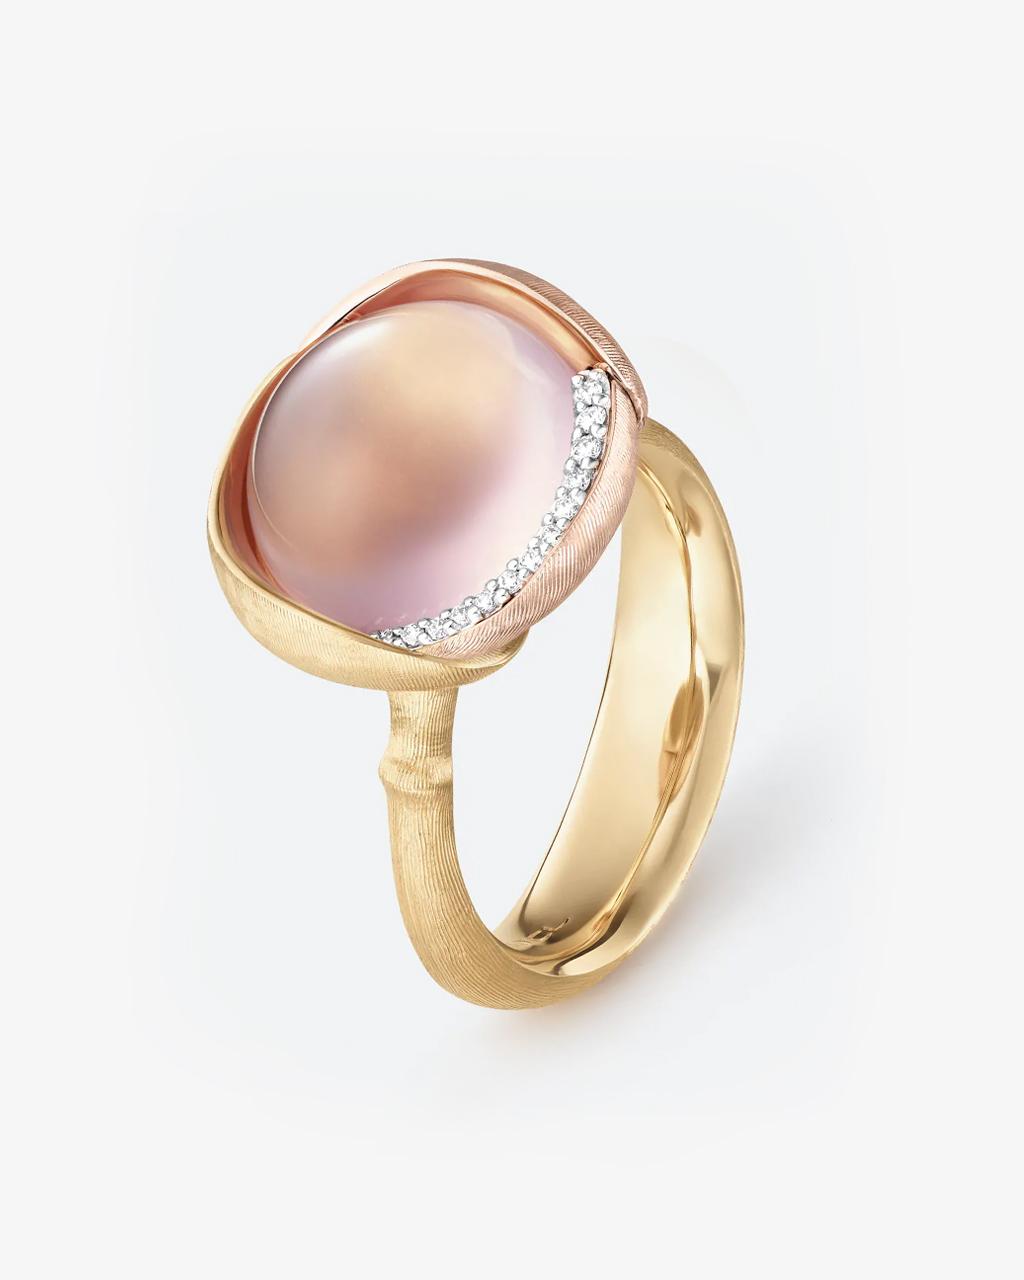 Ole Lynggaard 'Lotus' Rose Quartz & Diamond Ring - Size 3